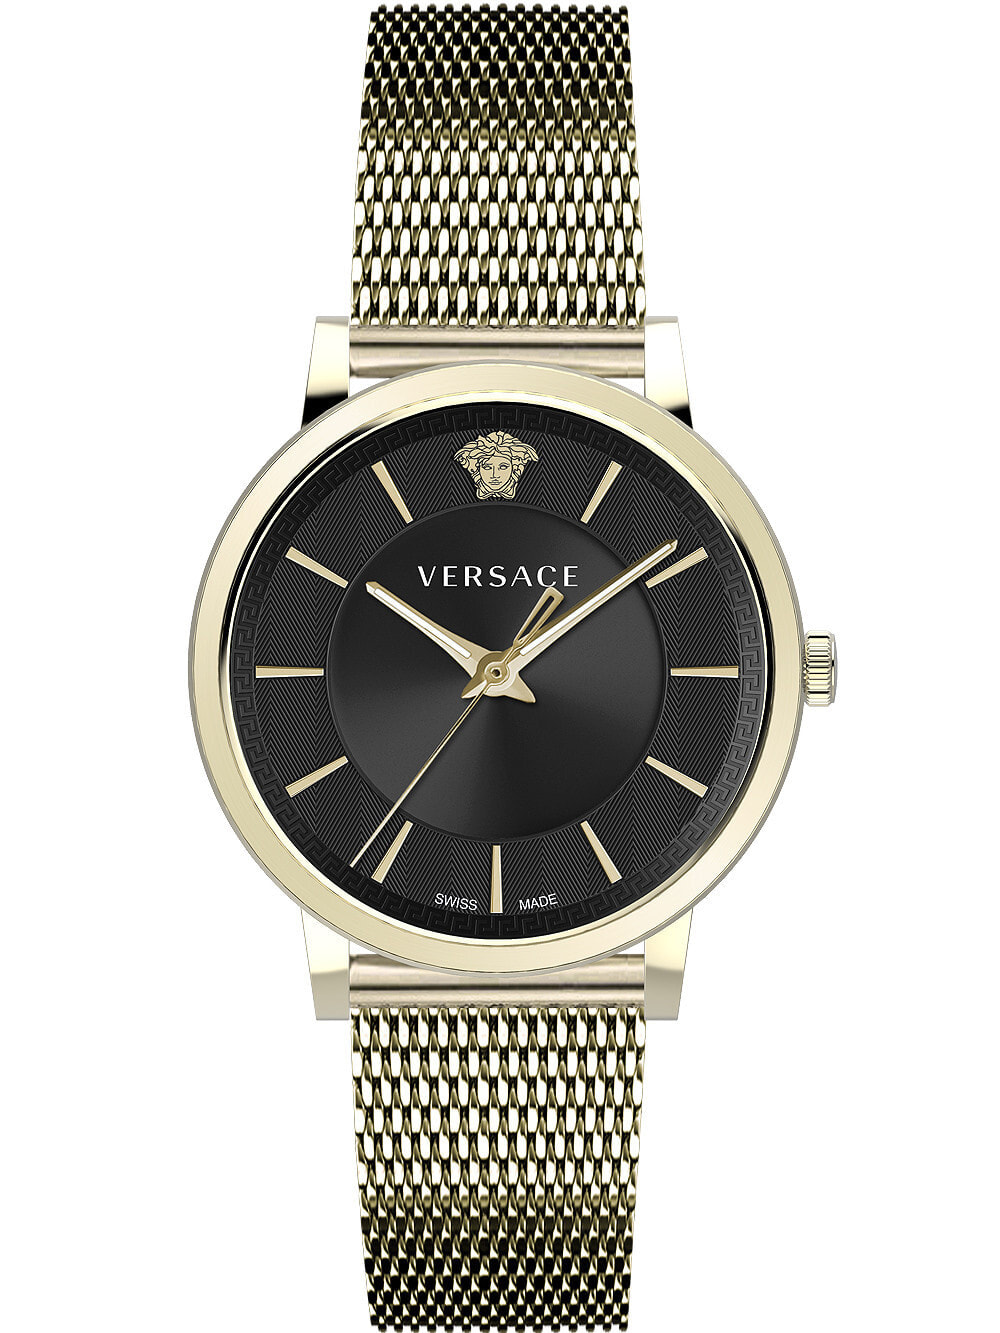 Мужские наручные часы с золотым браслетом Versace VE5A00920 V-Circle mens 42mm 5ATM